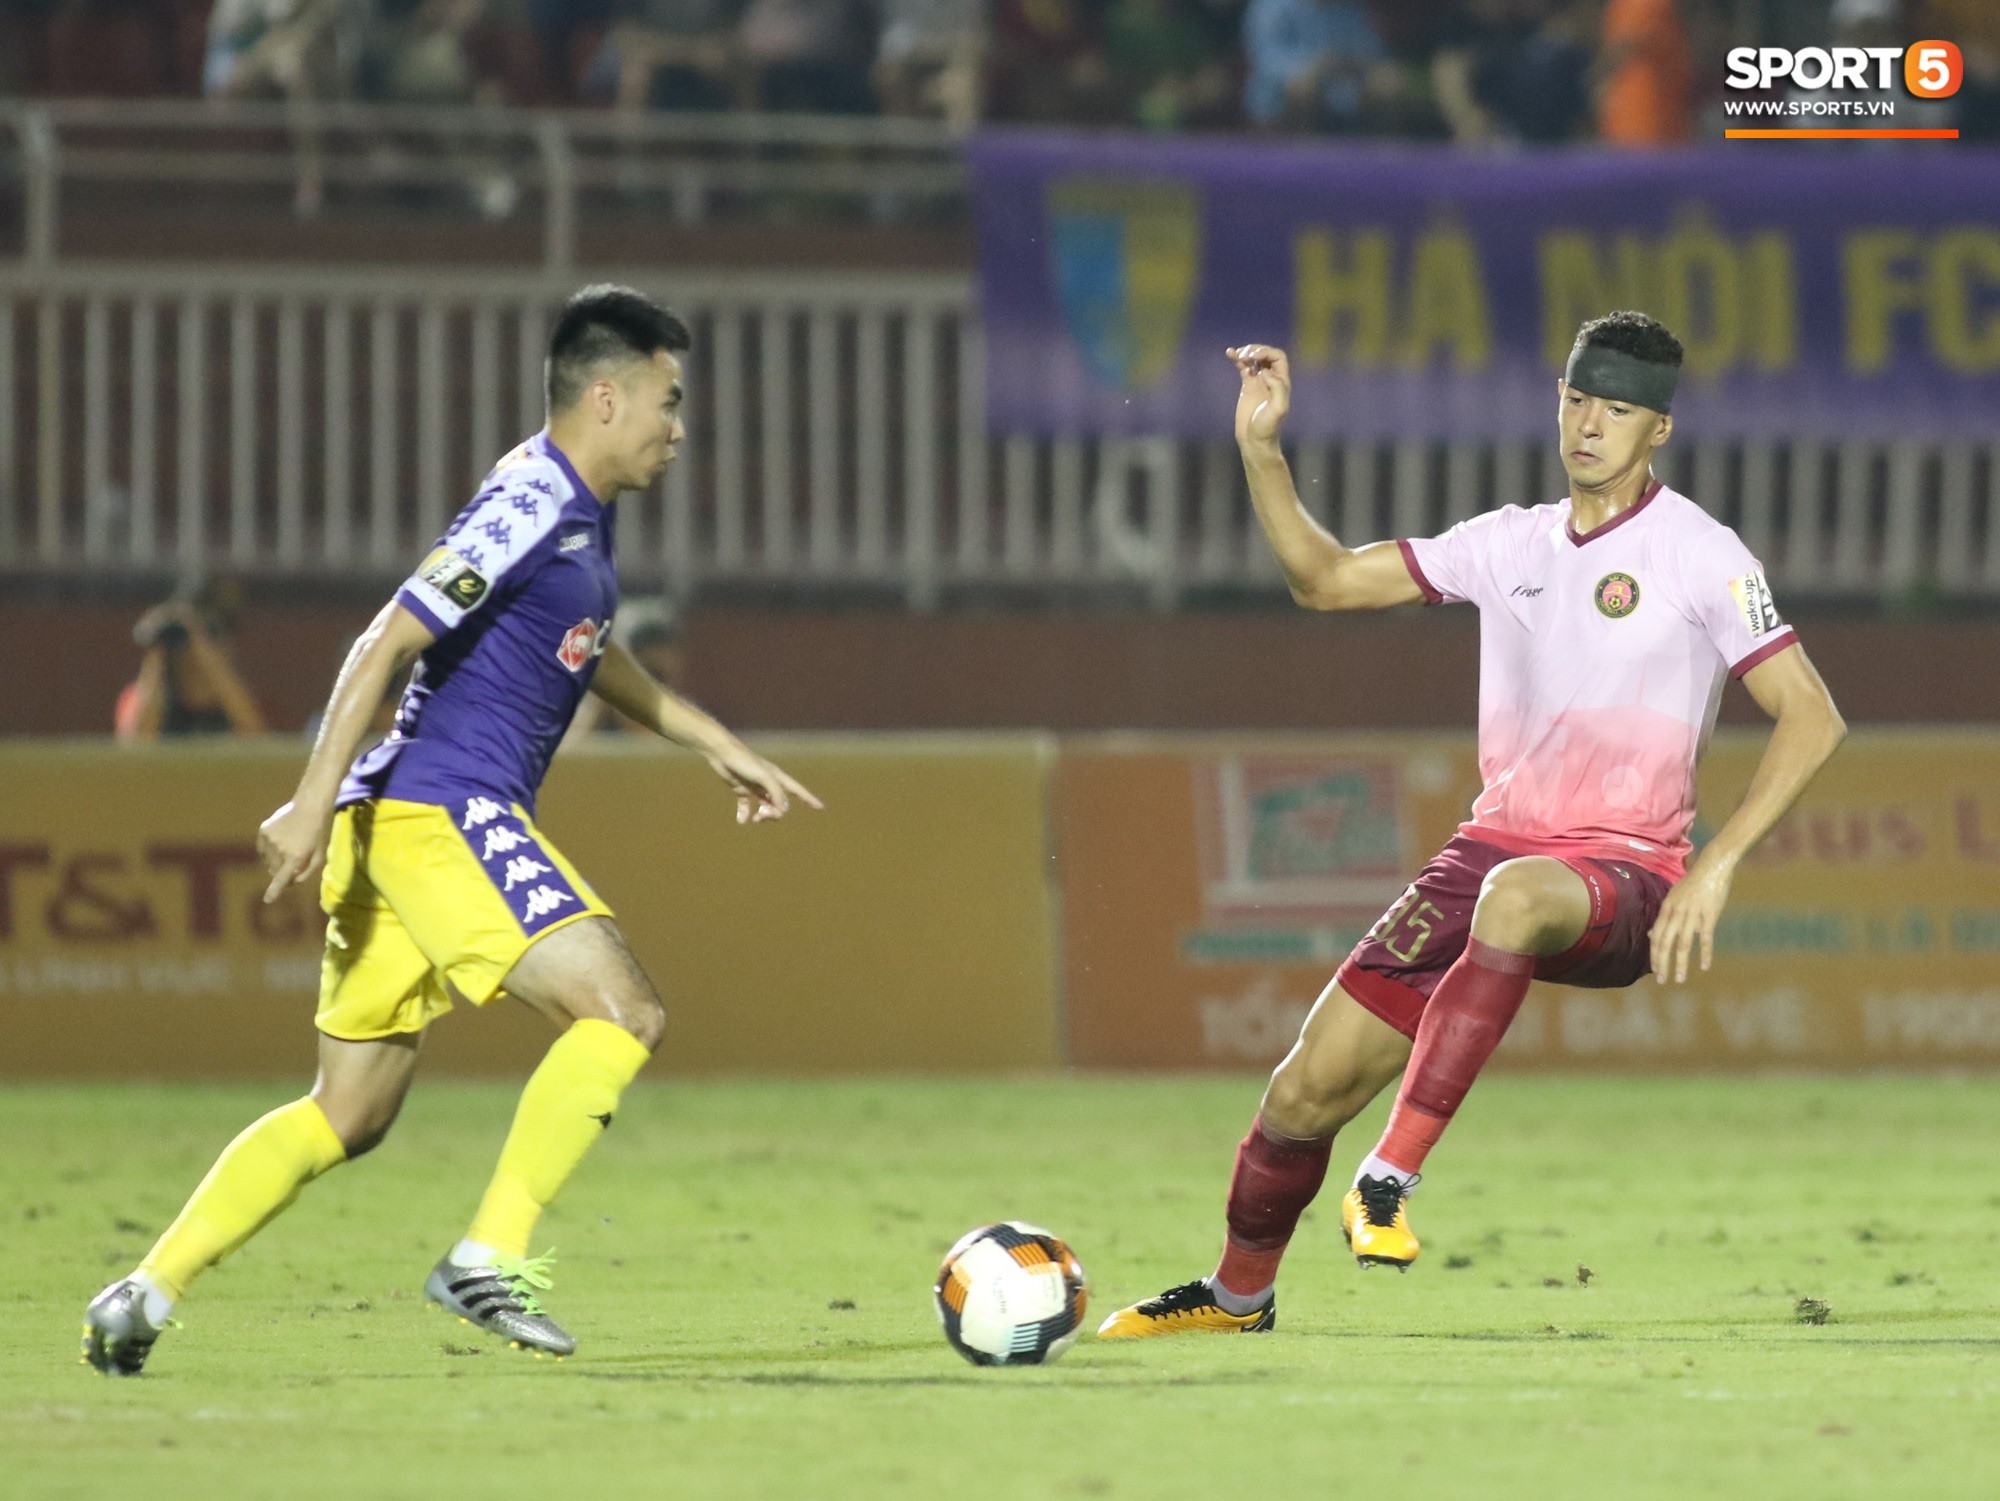 Hà Nội và Sài Gòn vẫn 'bỏ ngỏ' khả năng đá AFC Cup 2021 - Ảnh 1.